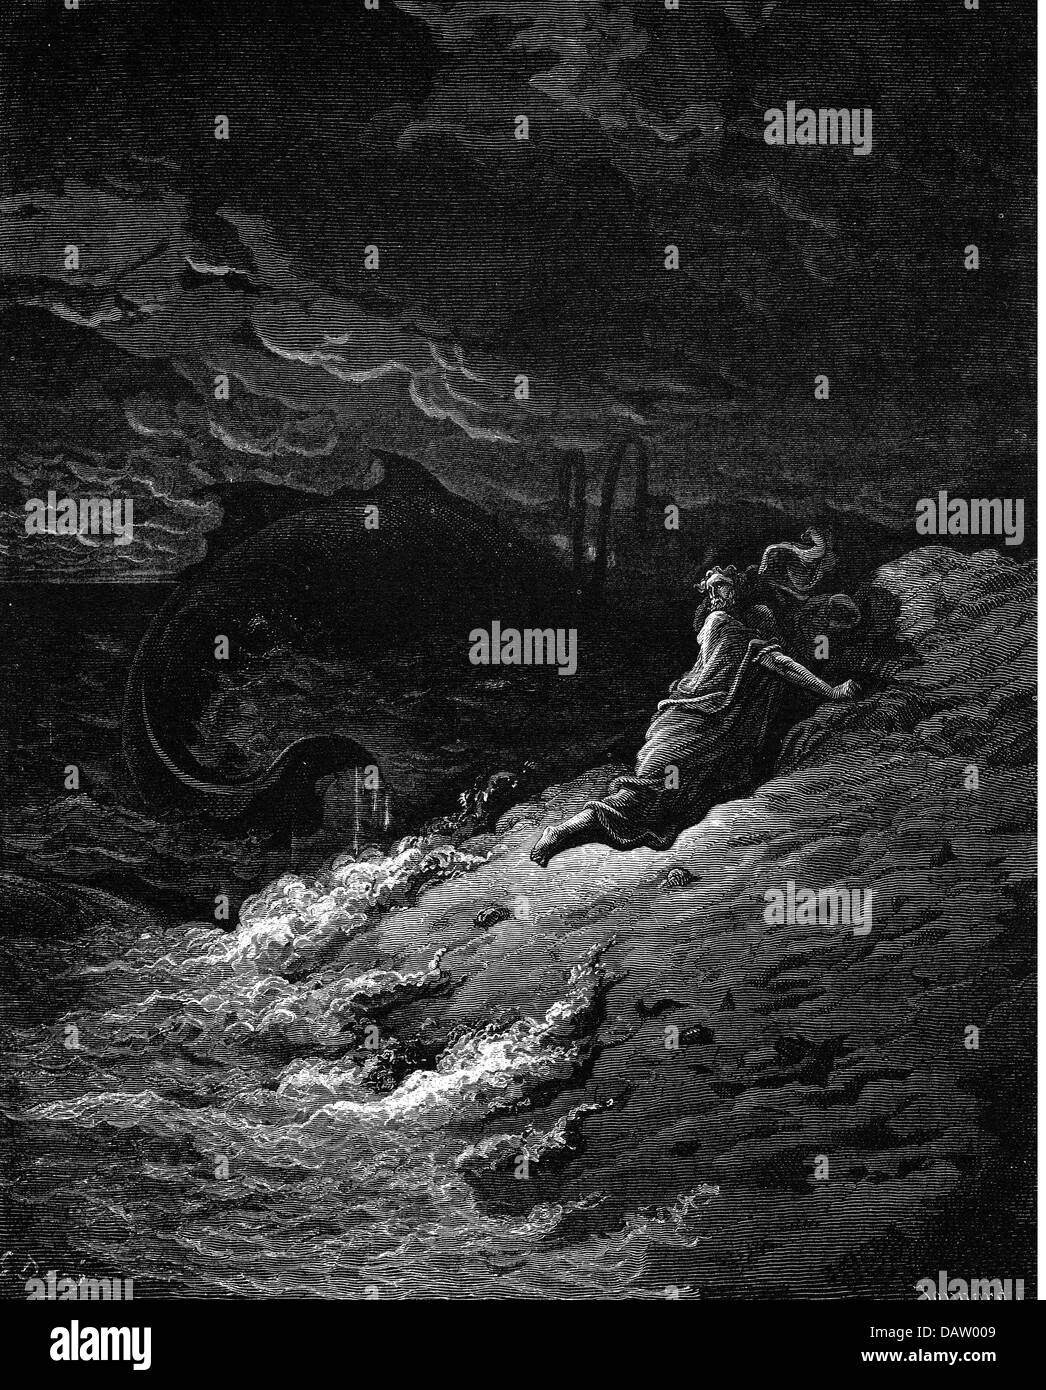 La religione, scene bibliche, "Giona gettato nella balena", incisione su legno per la Bibbia da Gustave Doré, 1866, artista del diritto d'autore non deve essere cancellata Foto Stock